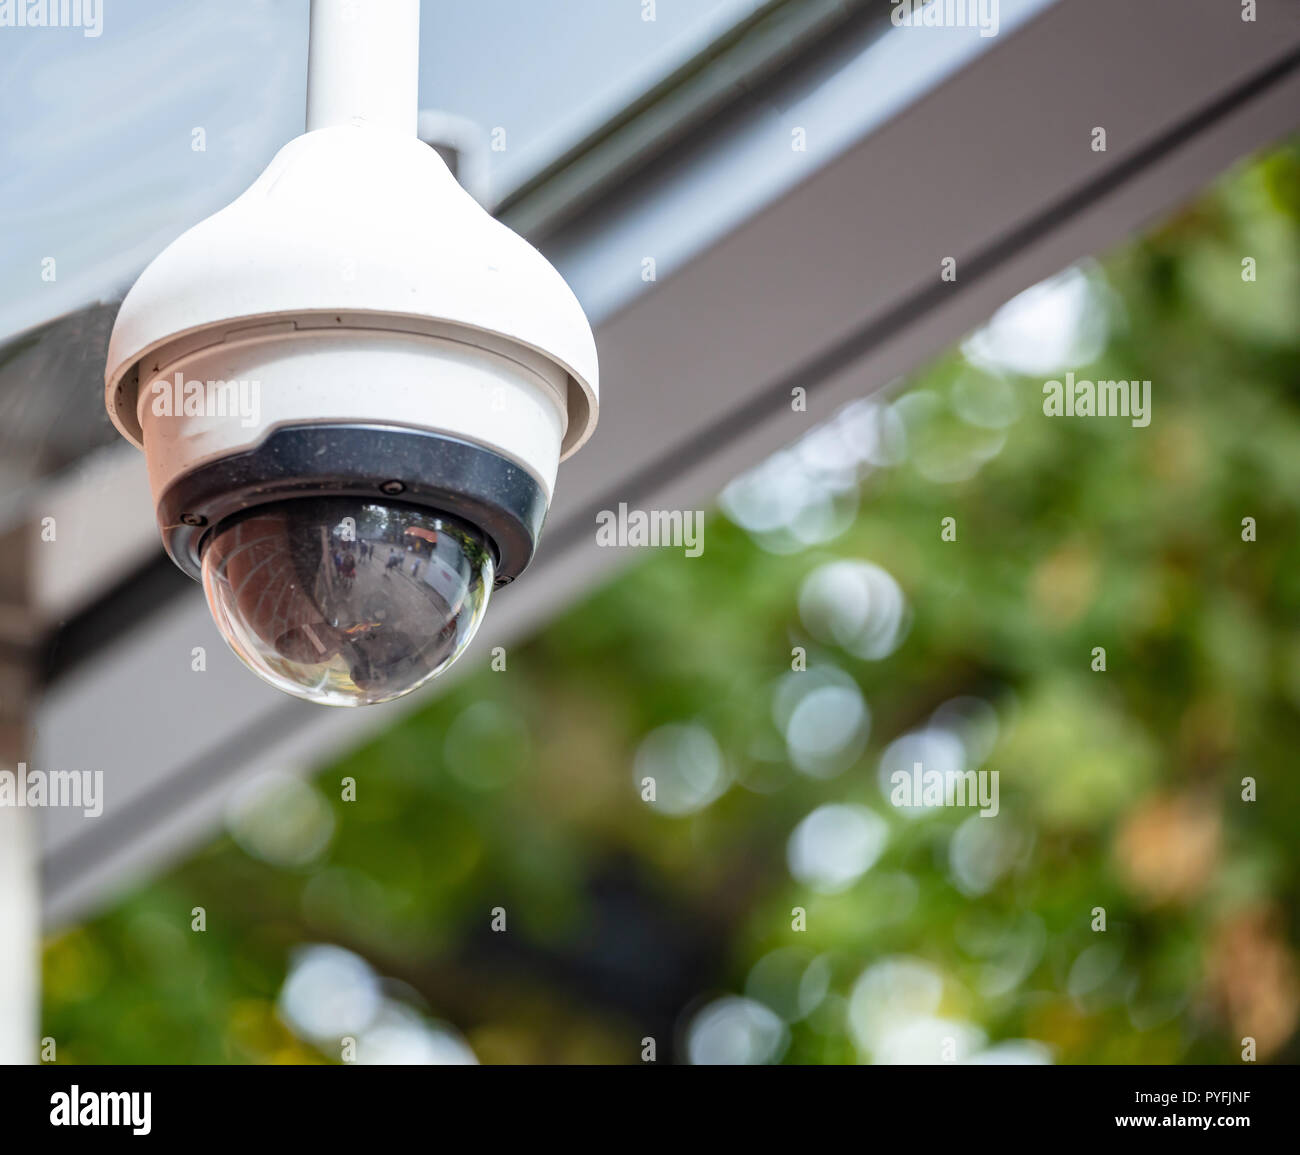 Sicherheitskonzept. Überwachung CCTV-Kamera auf dem Dach, Detailansicht Stockfoto